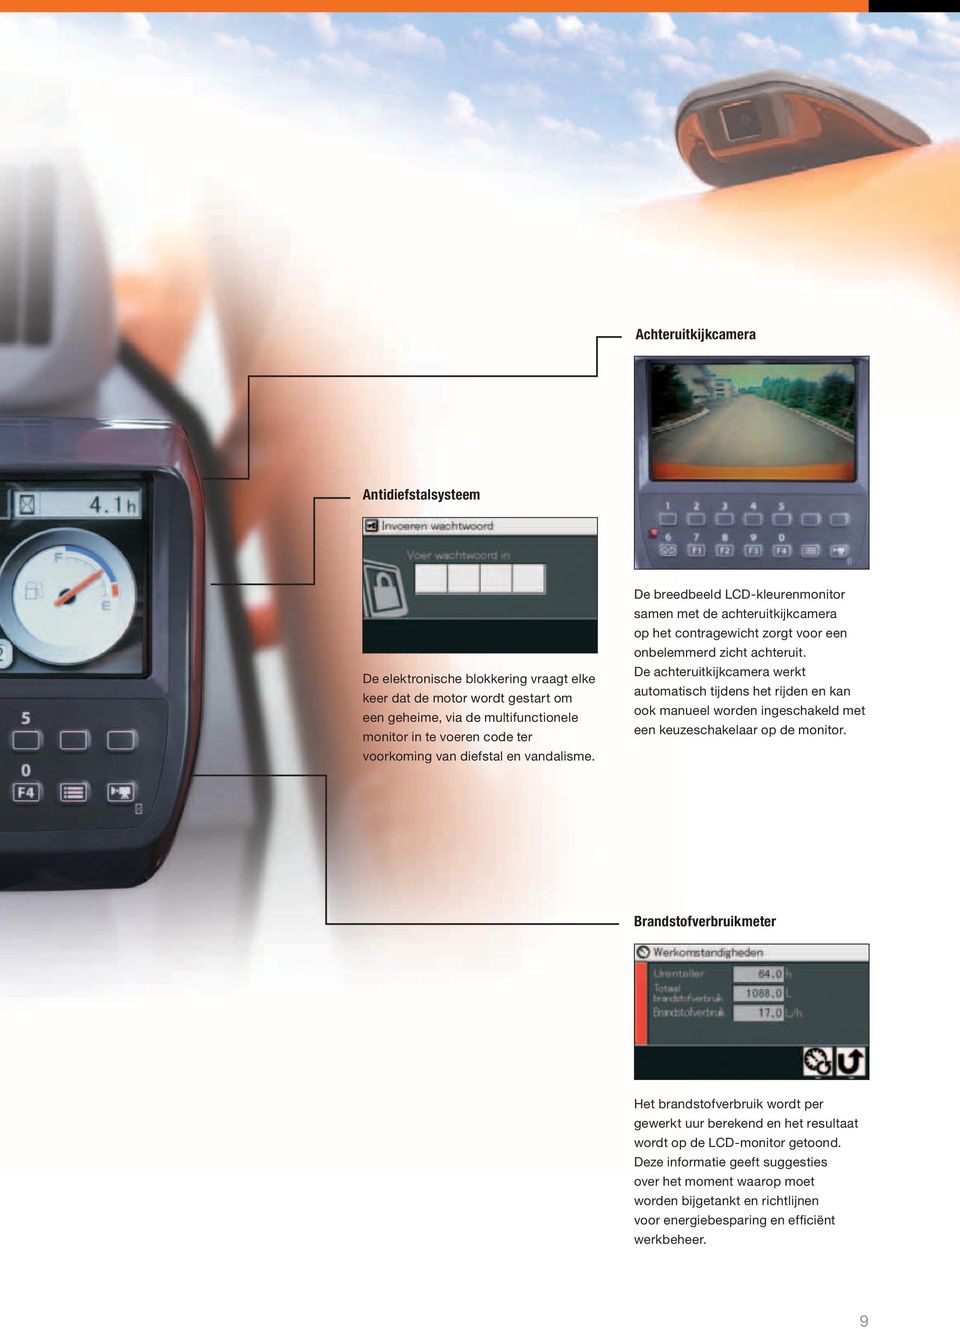 De achteruitkijkcamera werkt automatisch tijdens het rijden en kan ook manueel worden ingeschakeld met een keuzeschakelaar op de monitor.